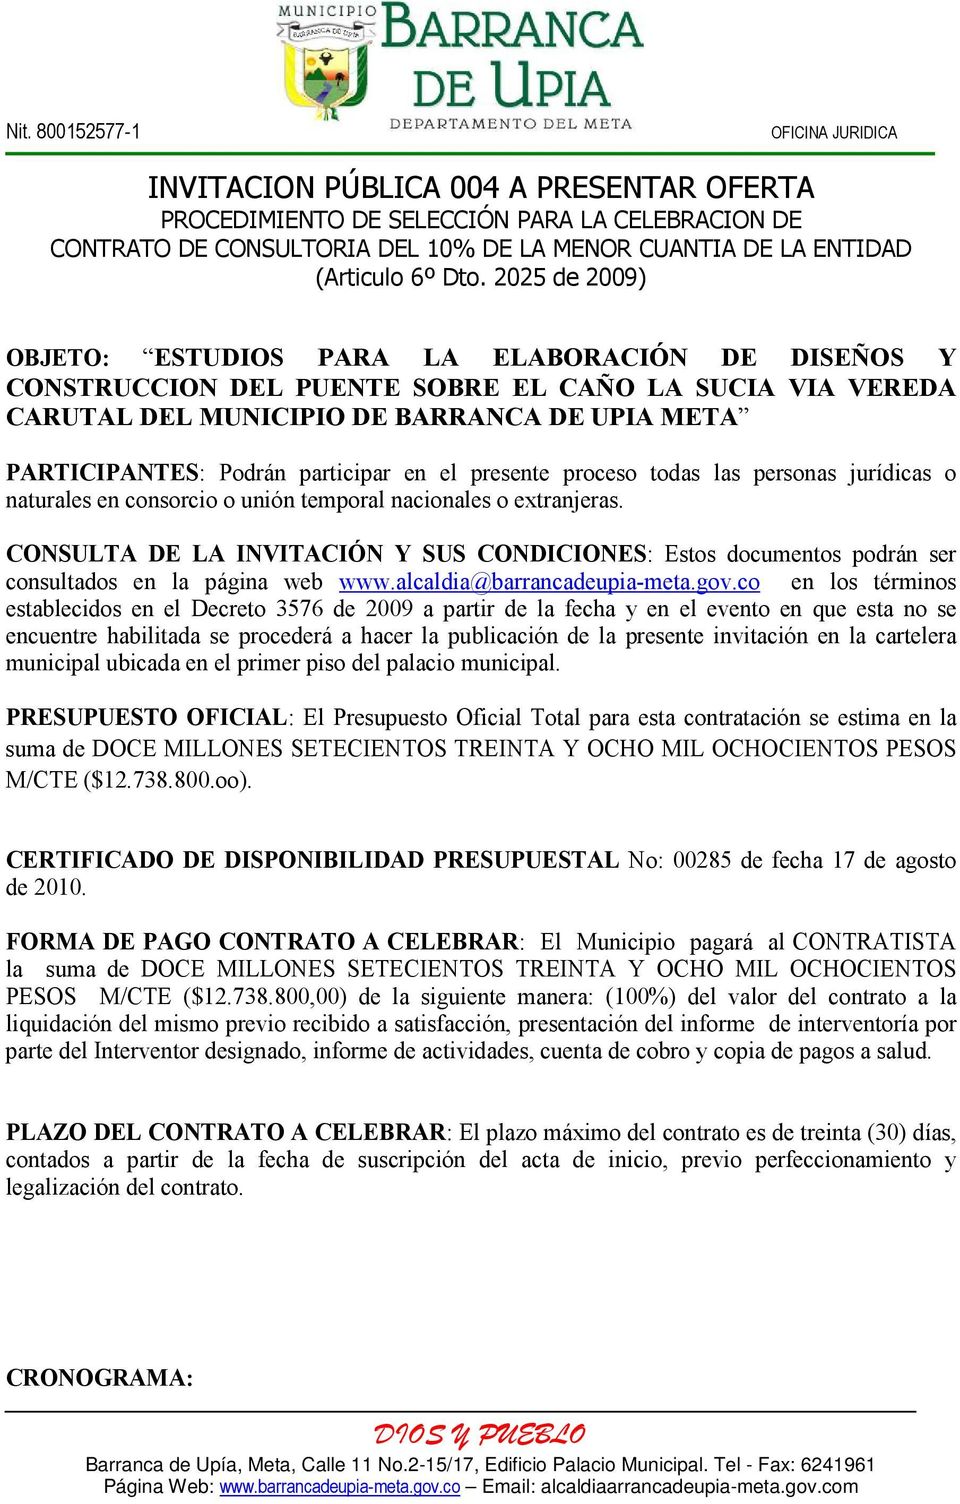 CONSULTA DE LA INVITACIÓN Y SUS CONDICIONES: Estos documentos podrán ser consultados en la página web www.alcaldia@barrancadeupia-meta.gov.